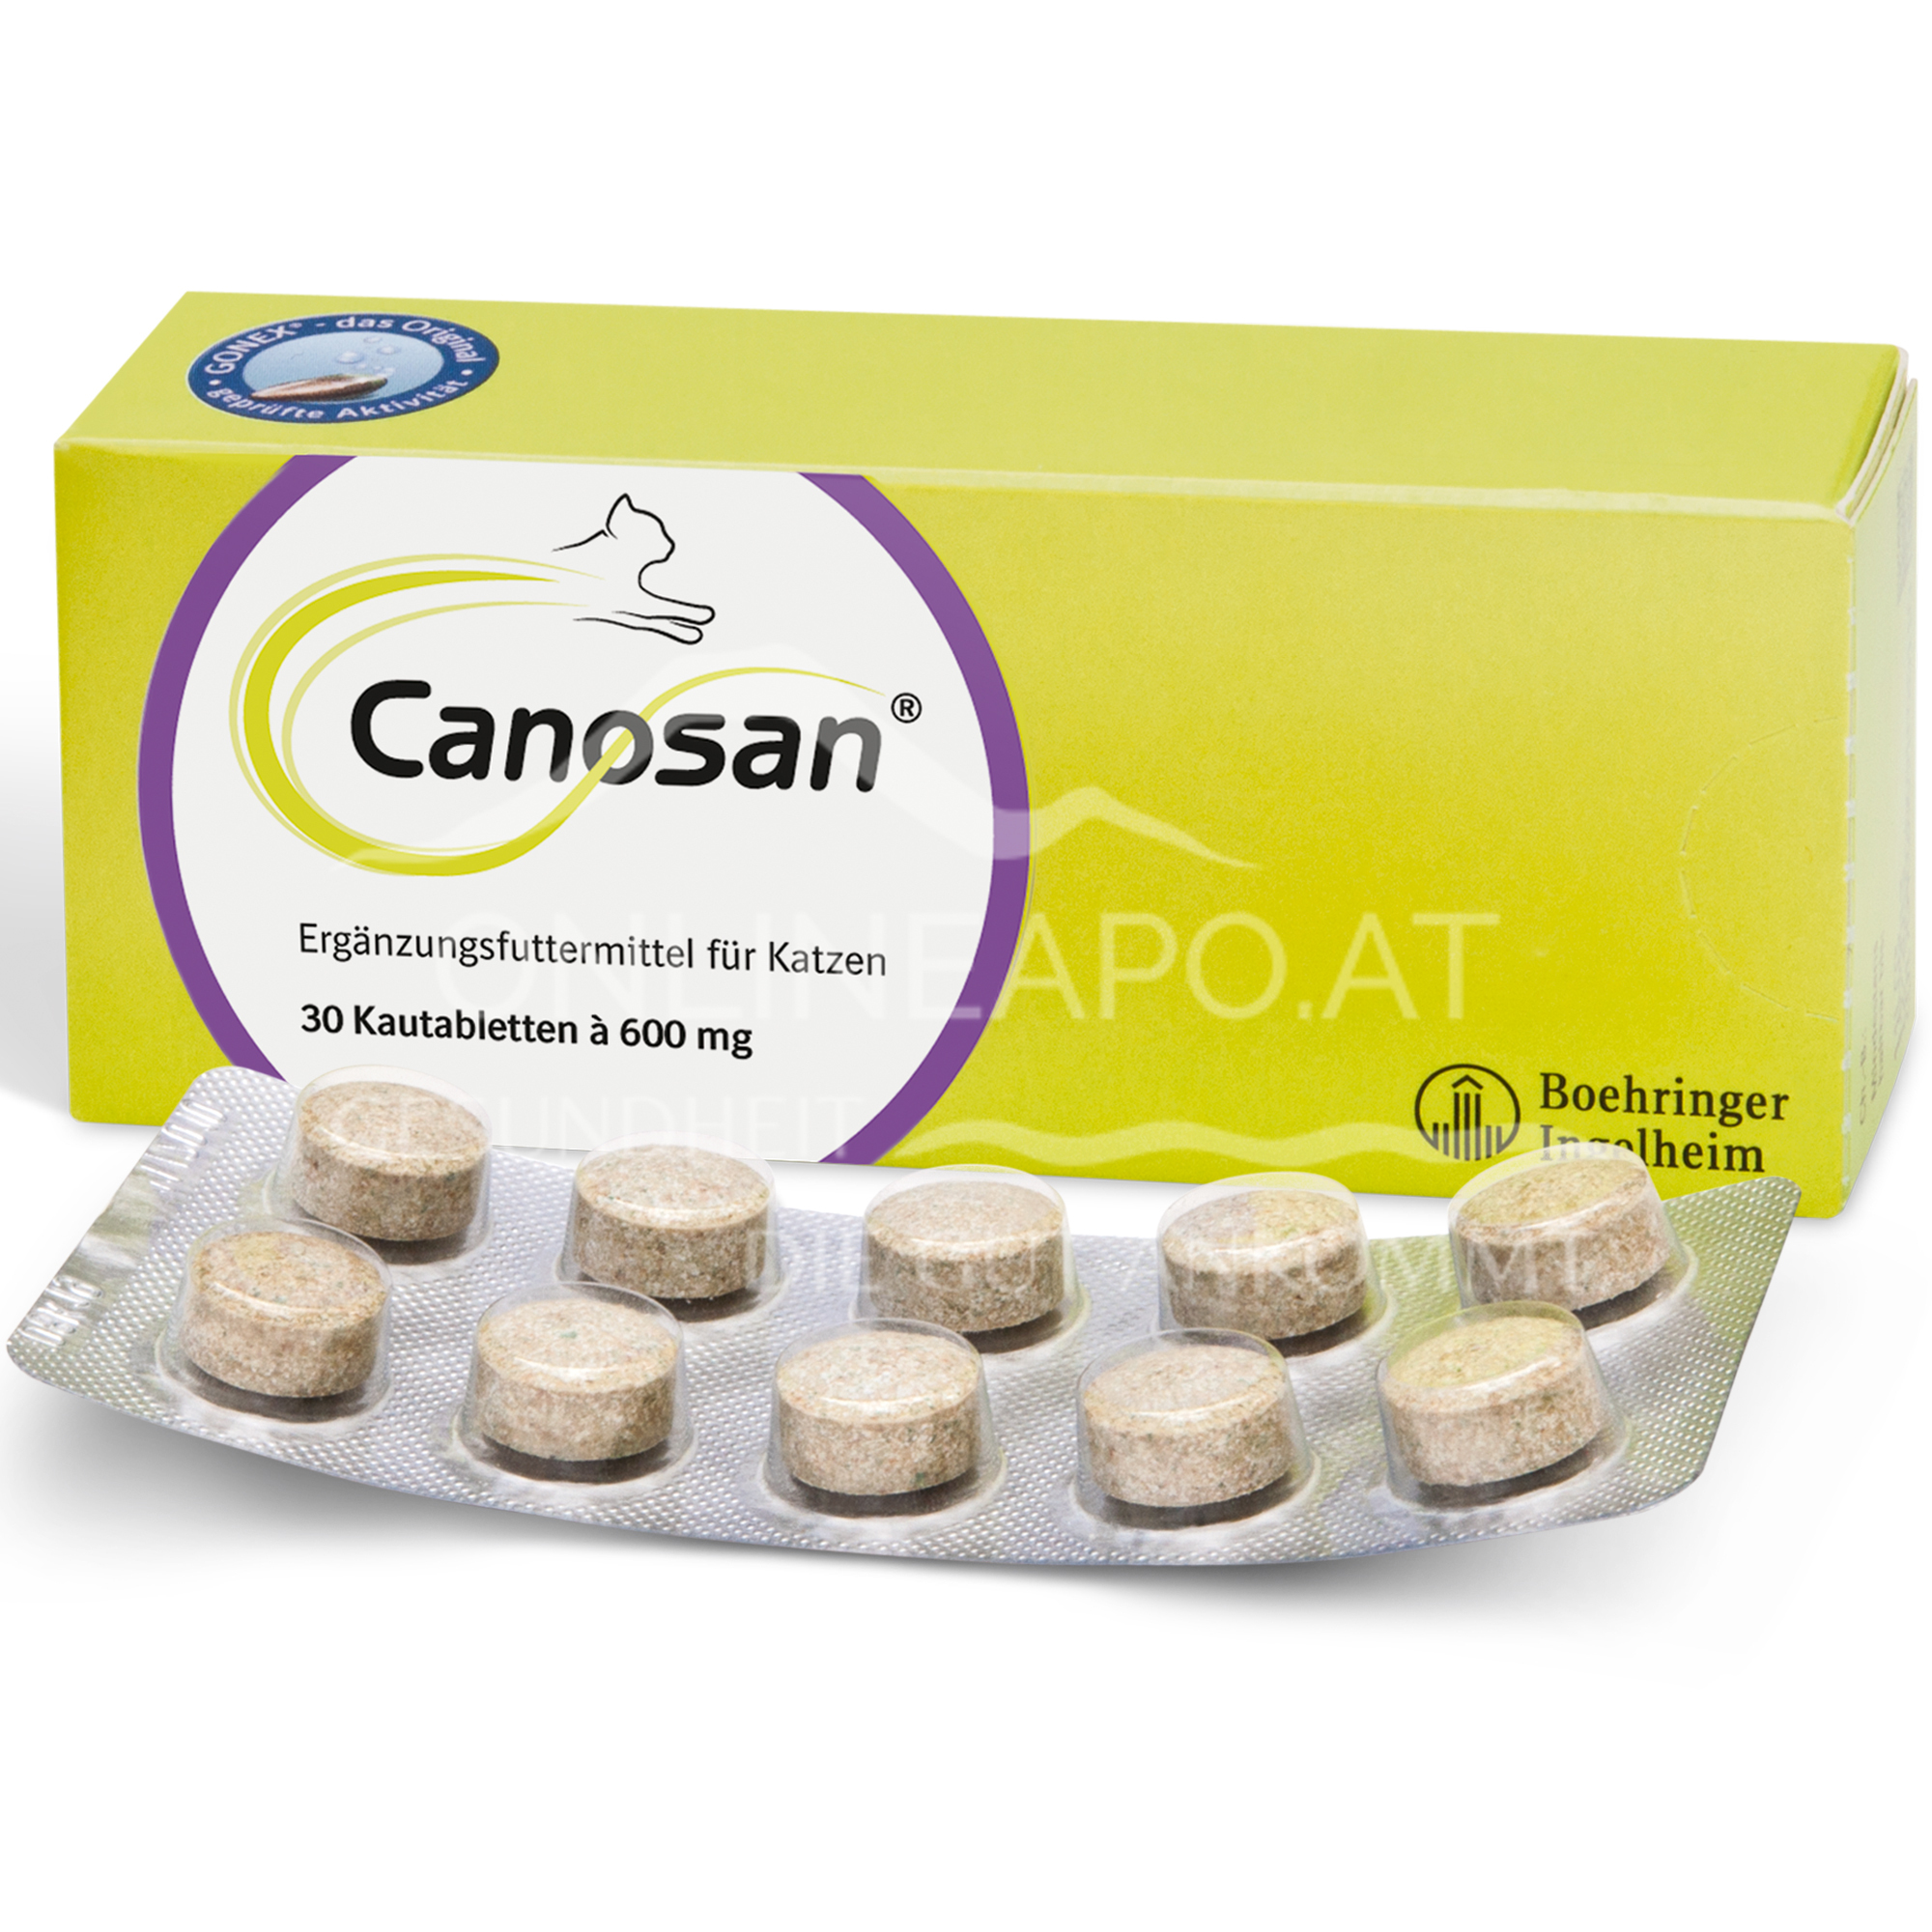 Canosan® Kautabletten für die Katze